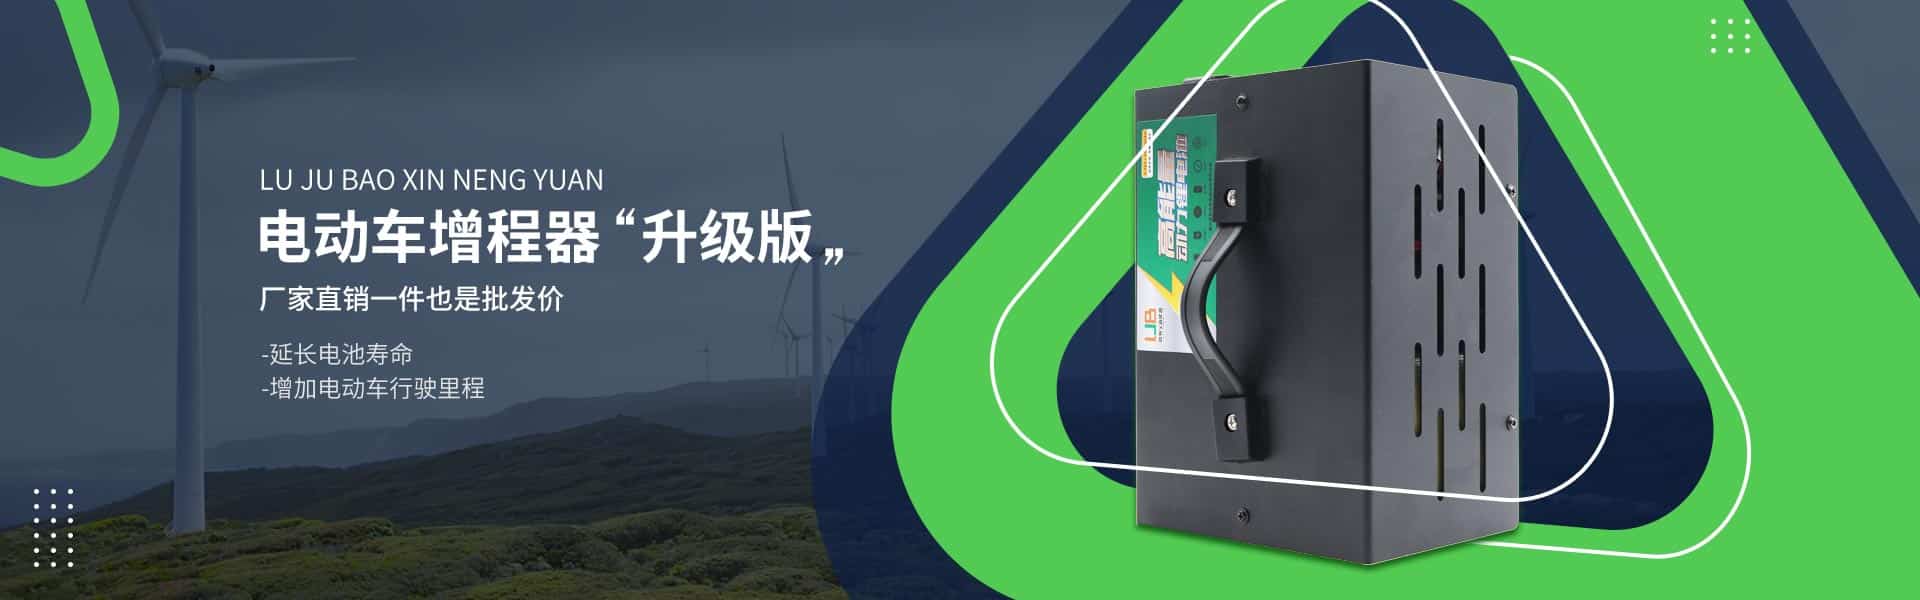 重庆路驹宝新能源科技有限公司